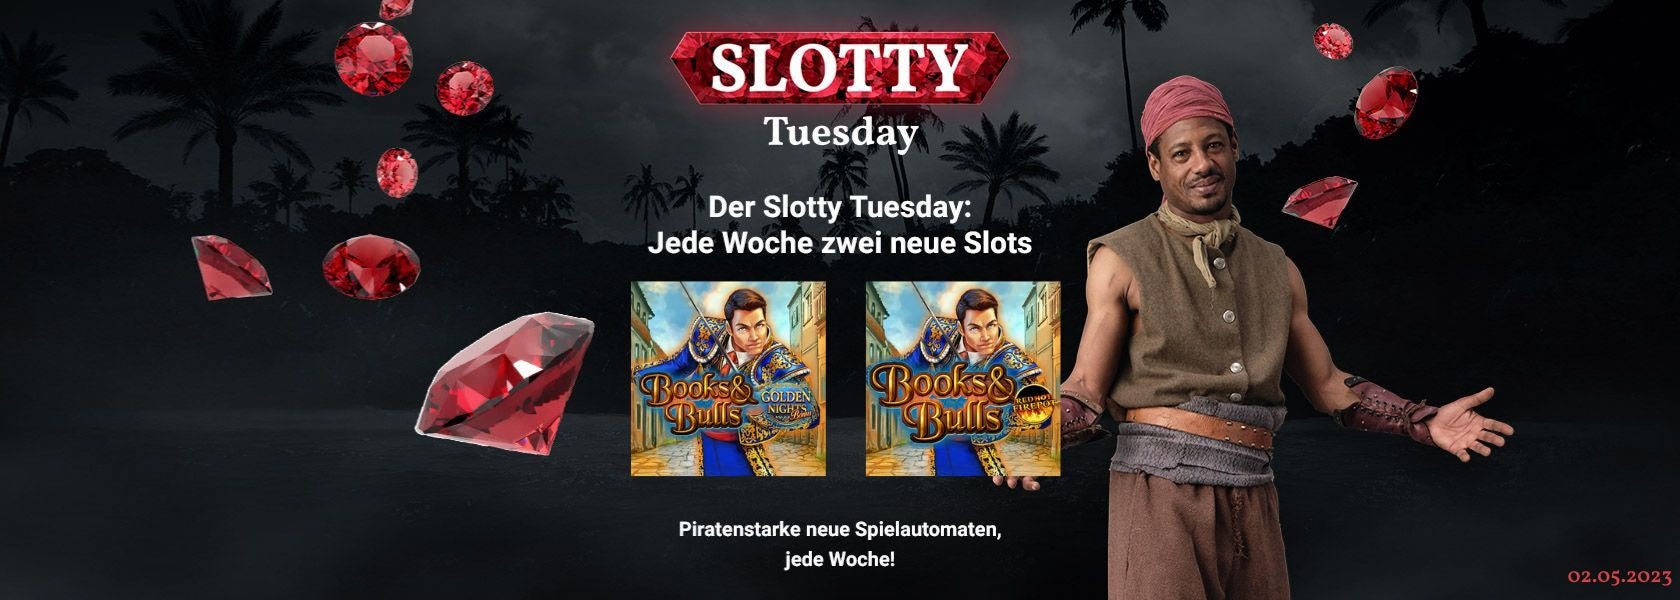 JPI-Header-Slotty-Tuesday-0205